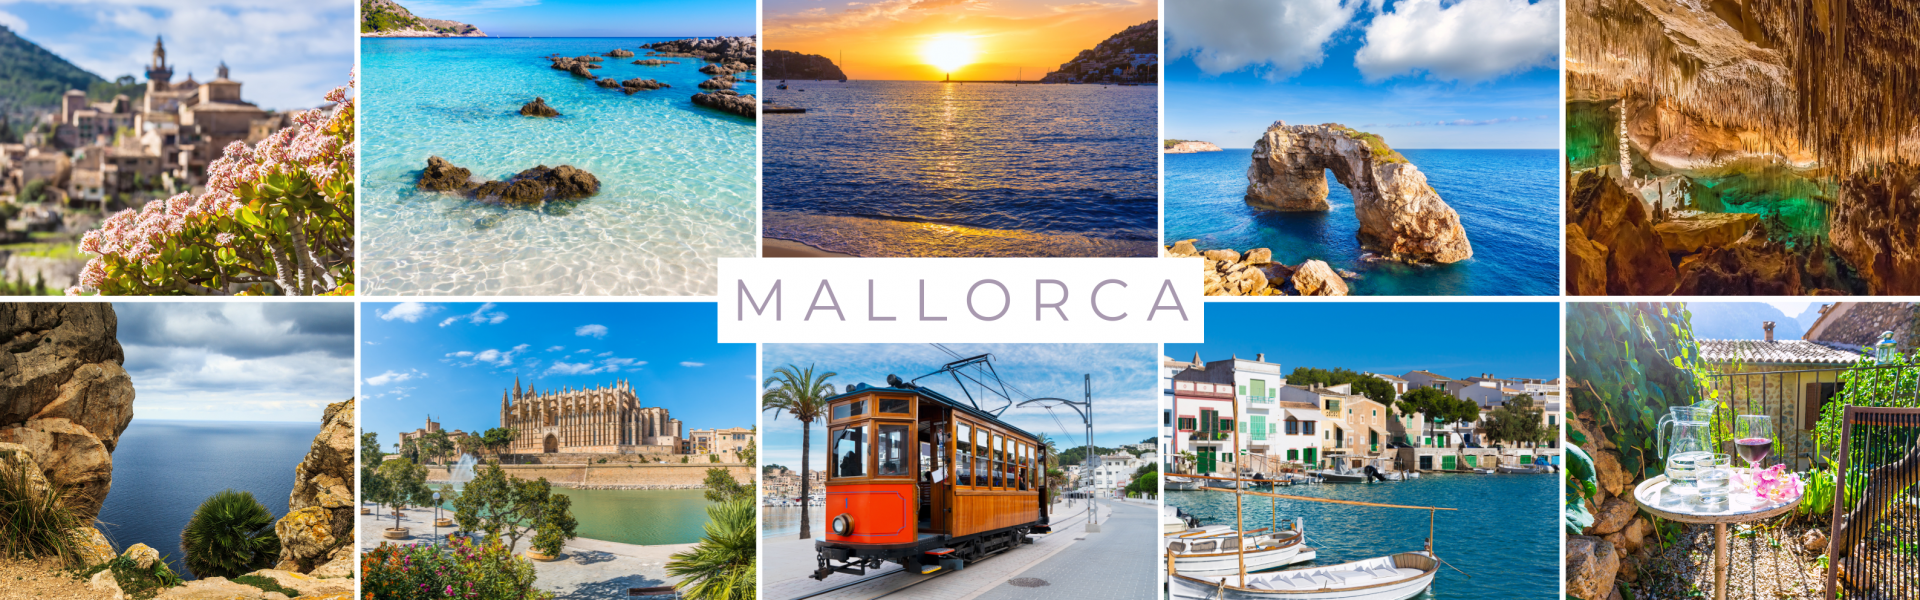 Highlights von Mallorca: Valldemossa, türkisfarbenes Wasser, Sonnenuntergang, Felsenbögen, Tropfsteinhöhle, Aussichtspunkt, Kathedrale von Palma, Straßenbahn von Soller, Hafen von Cala Figuera, malerischer Garten.